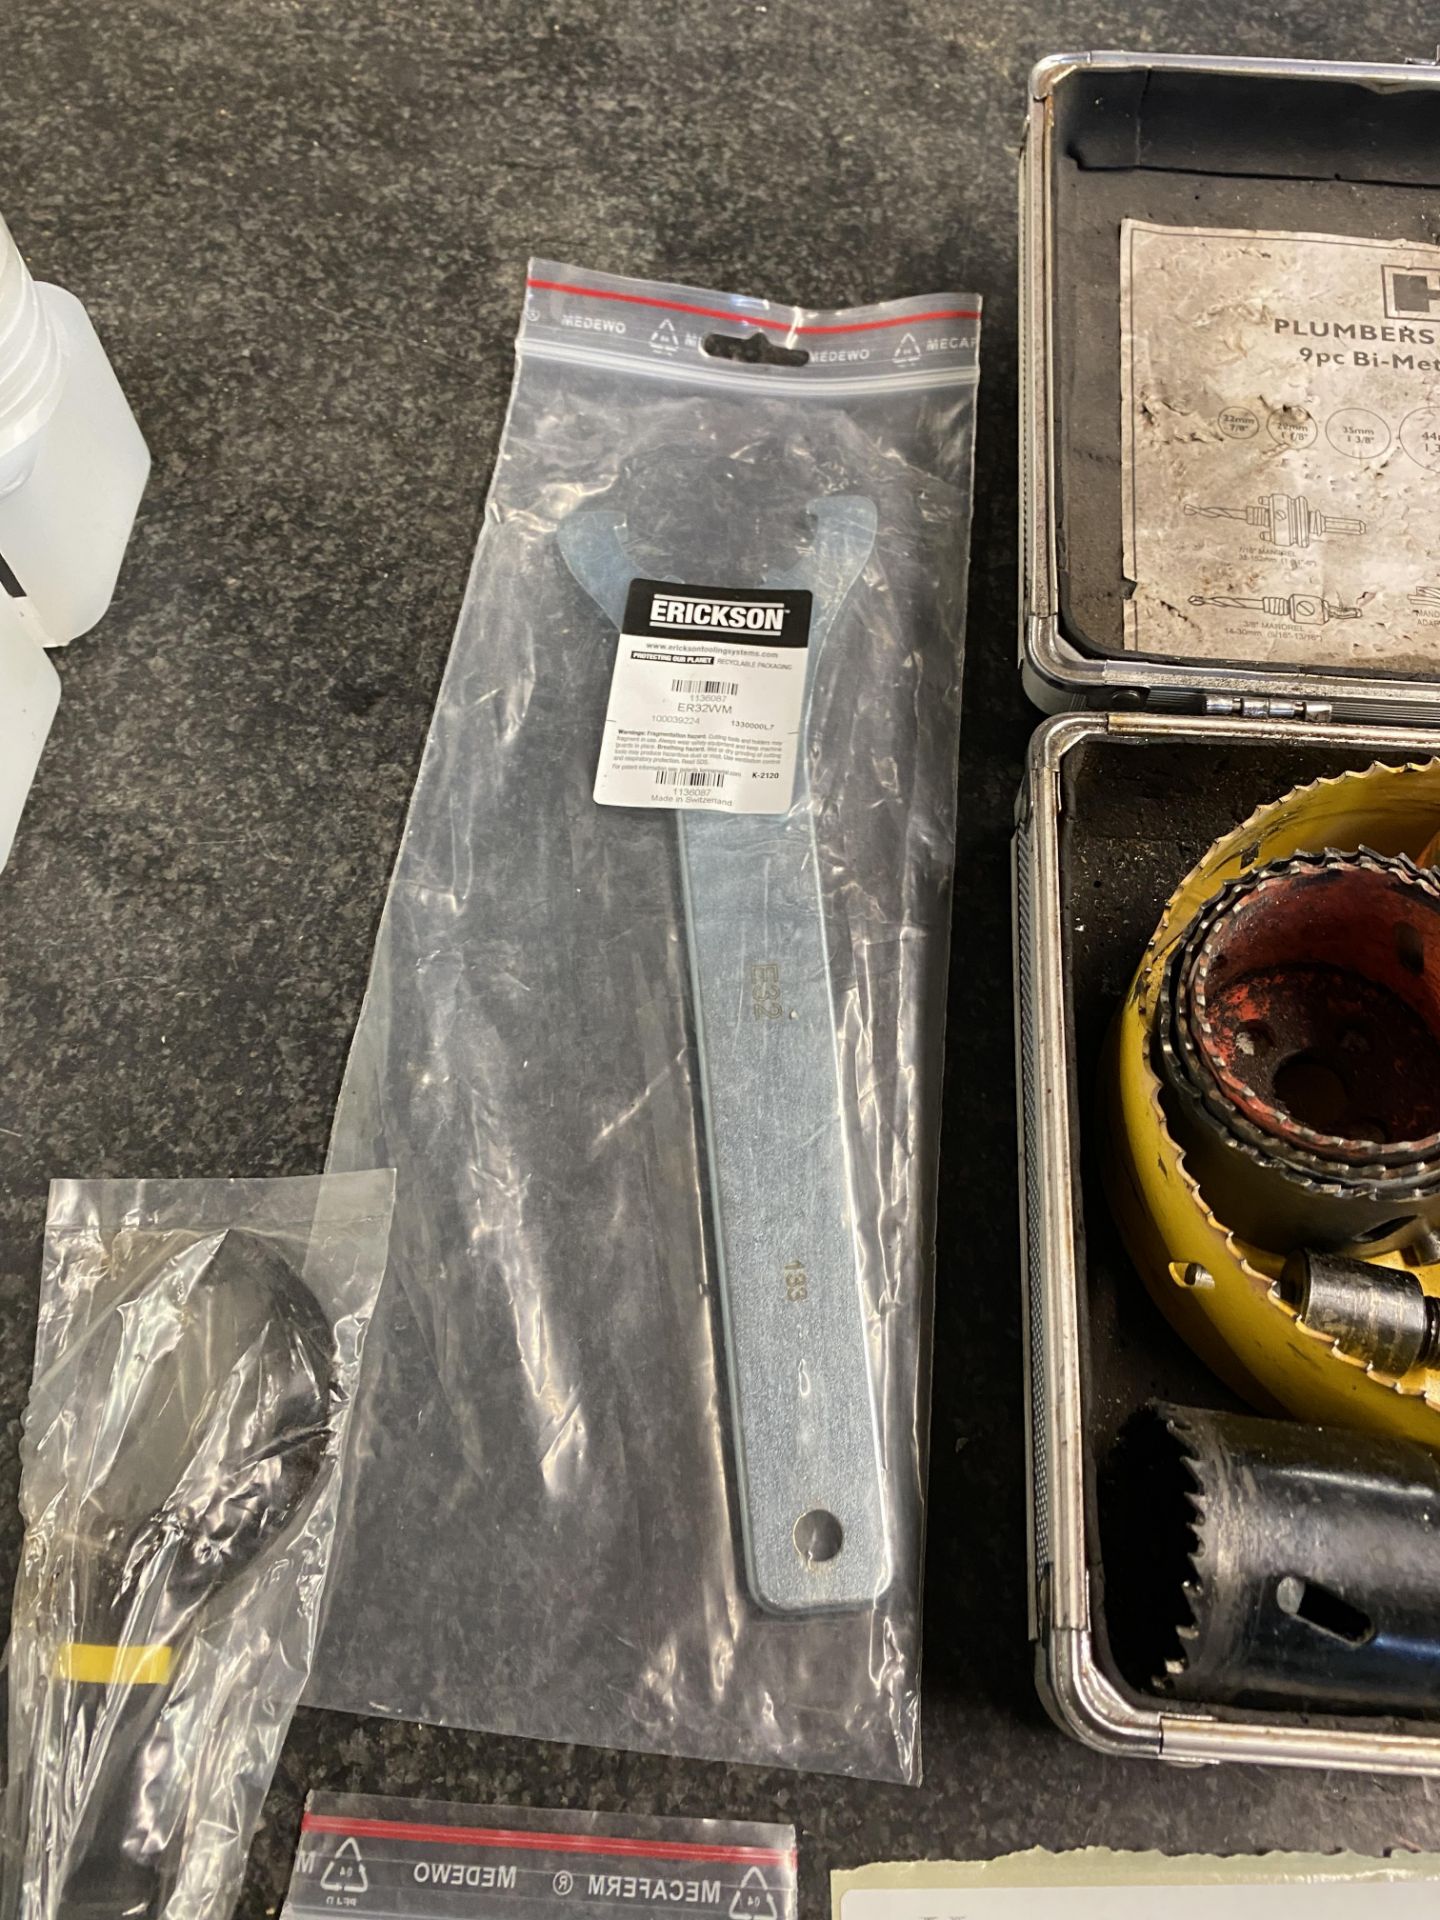 HR Plumbers Holesaw Kit 9 Pc Bi-Metal Kit with Erickson ER32WM Wrench - Image 5 of 9